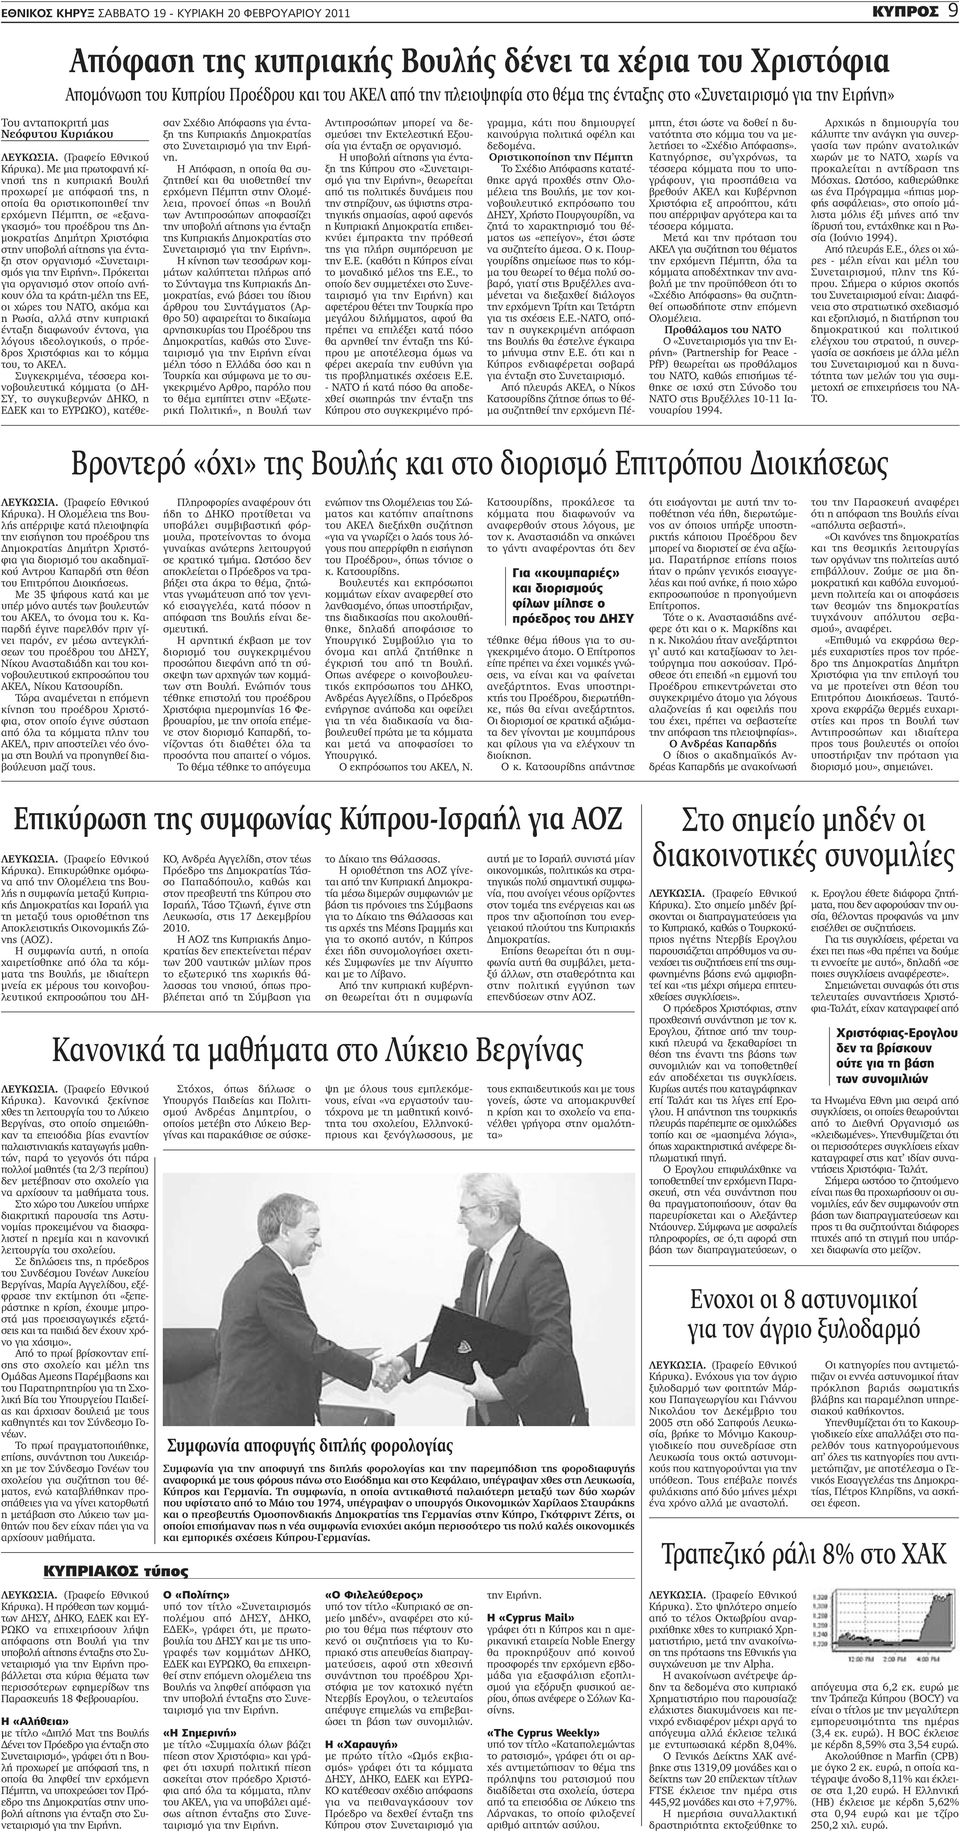 Με μια πρωτοφανή κίνησή της η κυπριακή Βουλή προχωρεί με απόφασή της, η οποία θα οριστικοποιηθεί την ερχόμενη Πέμπτη, σε «εξαναγκασμό» του προέδρου της Δημοκρατίας Δημήτρη Χριστόφια στην υποβολή